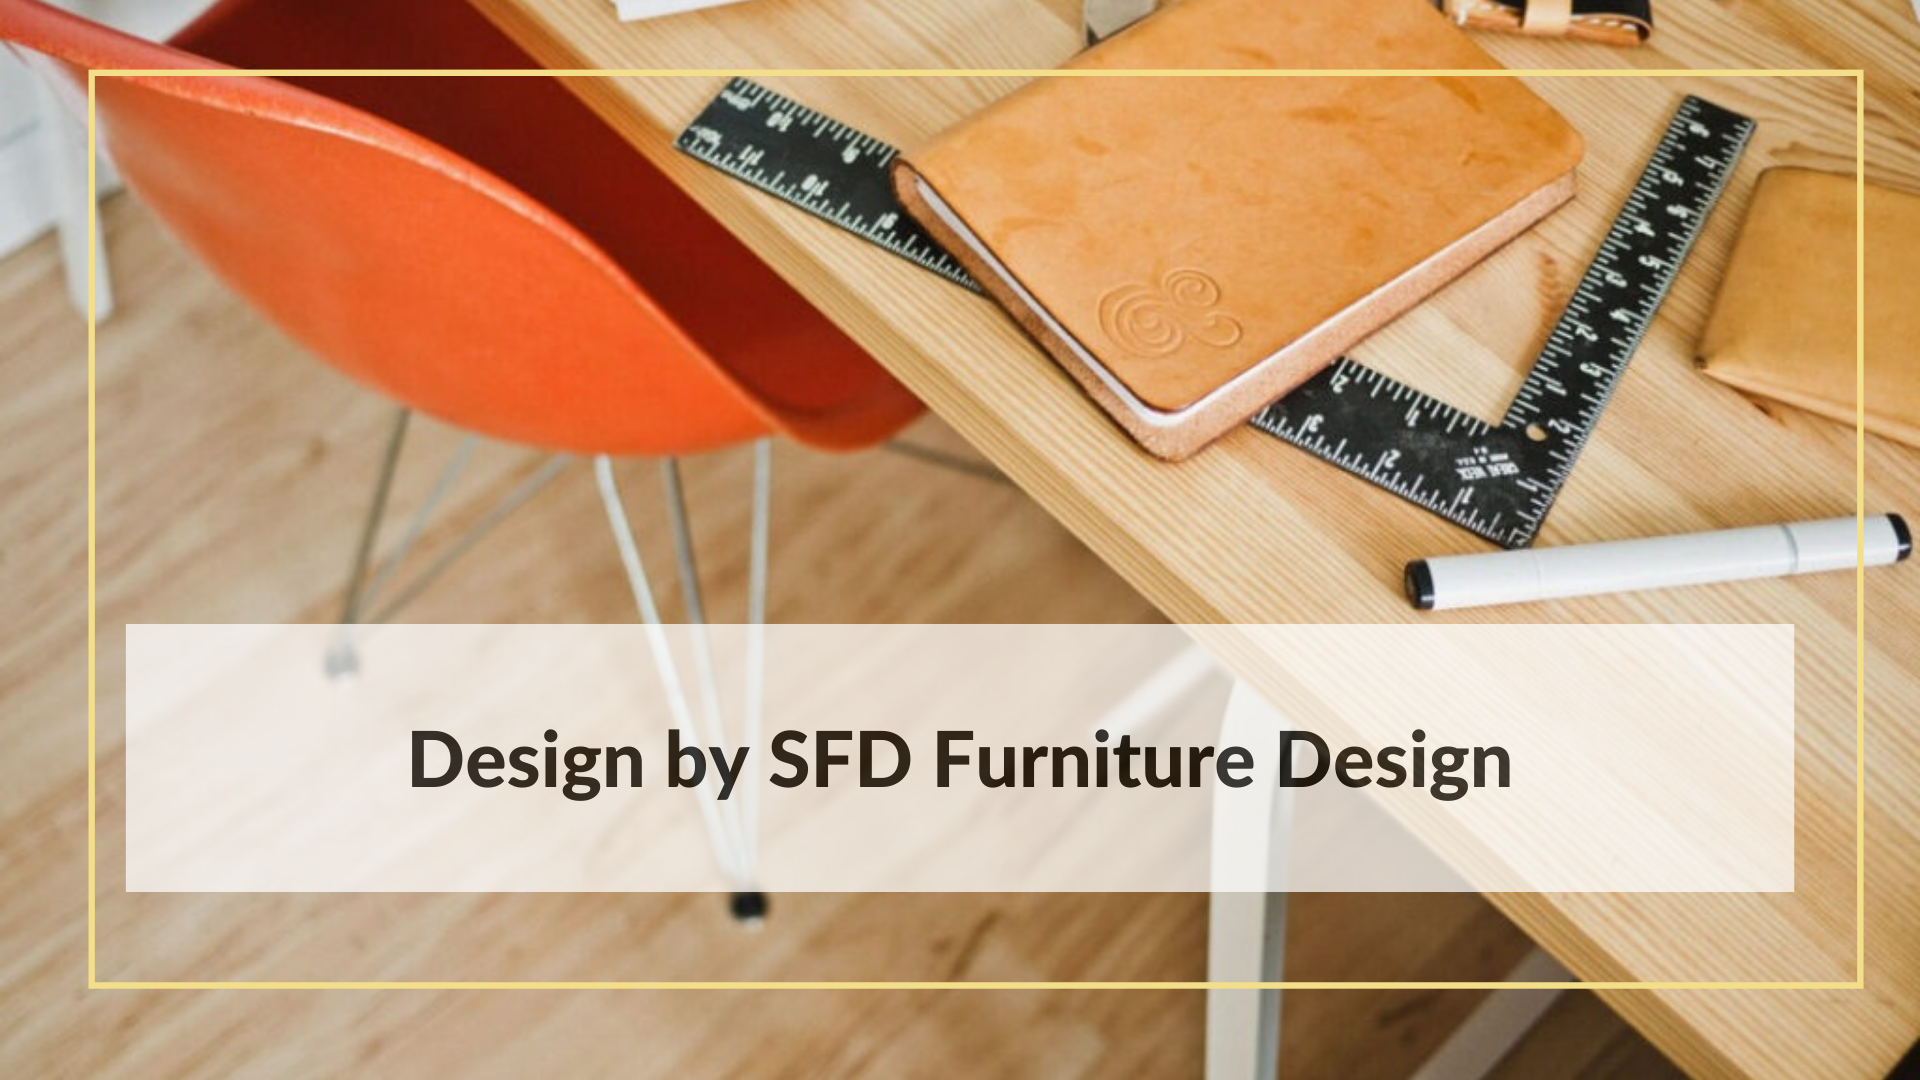 Design by SFD Furniture Design